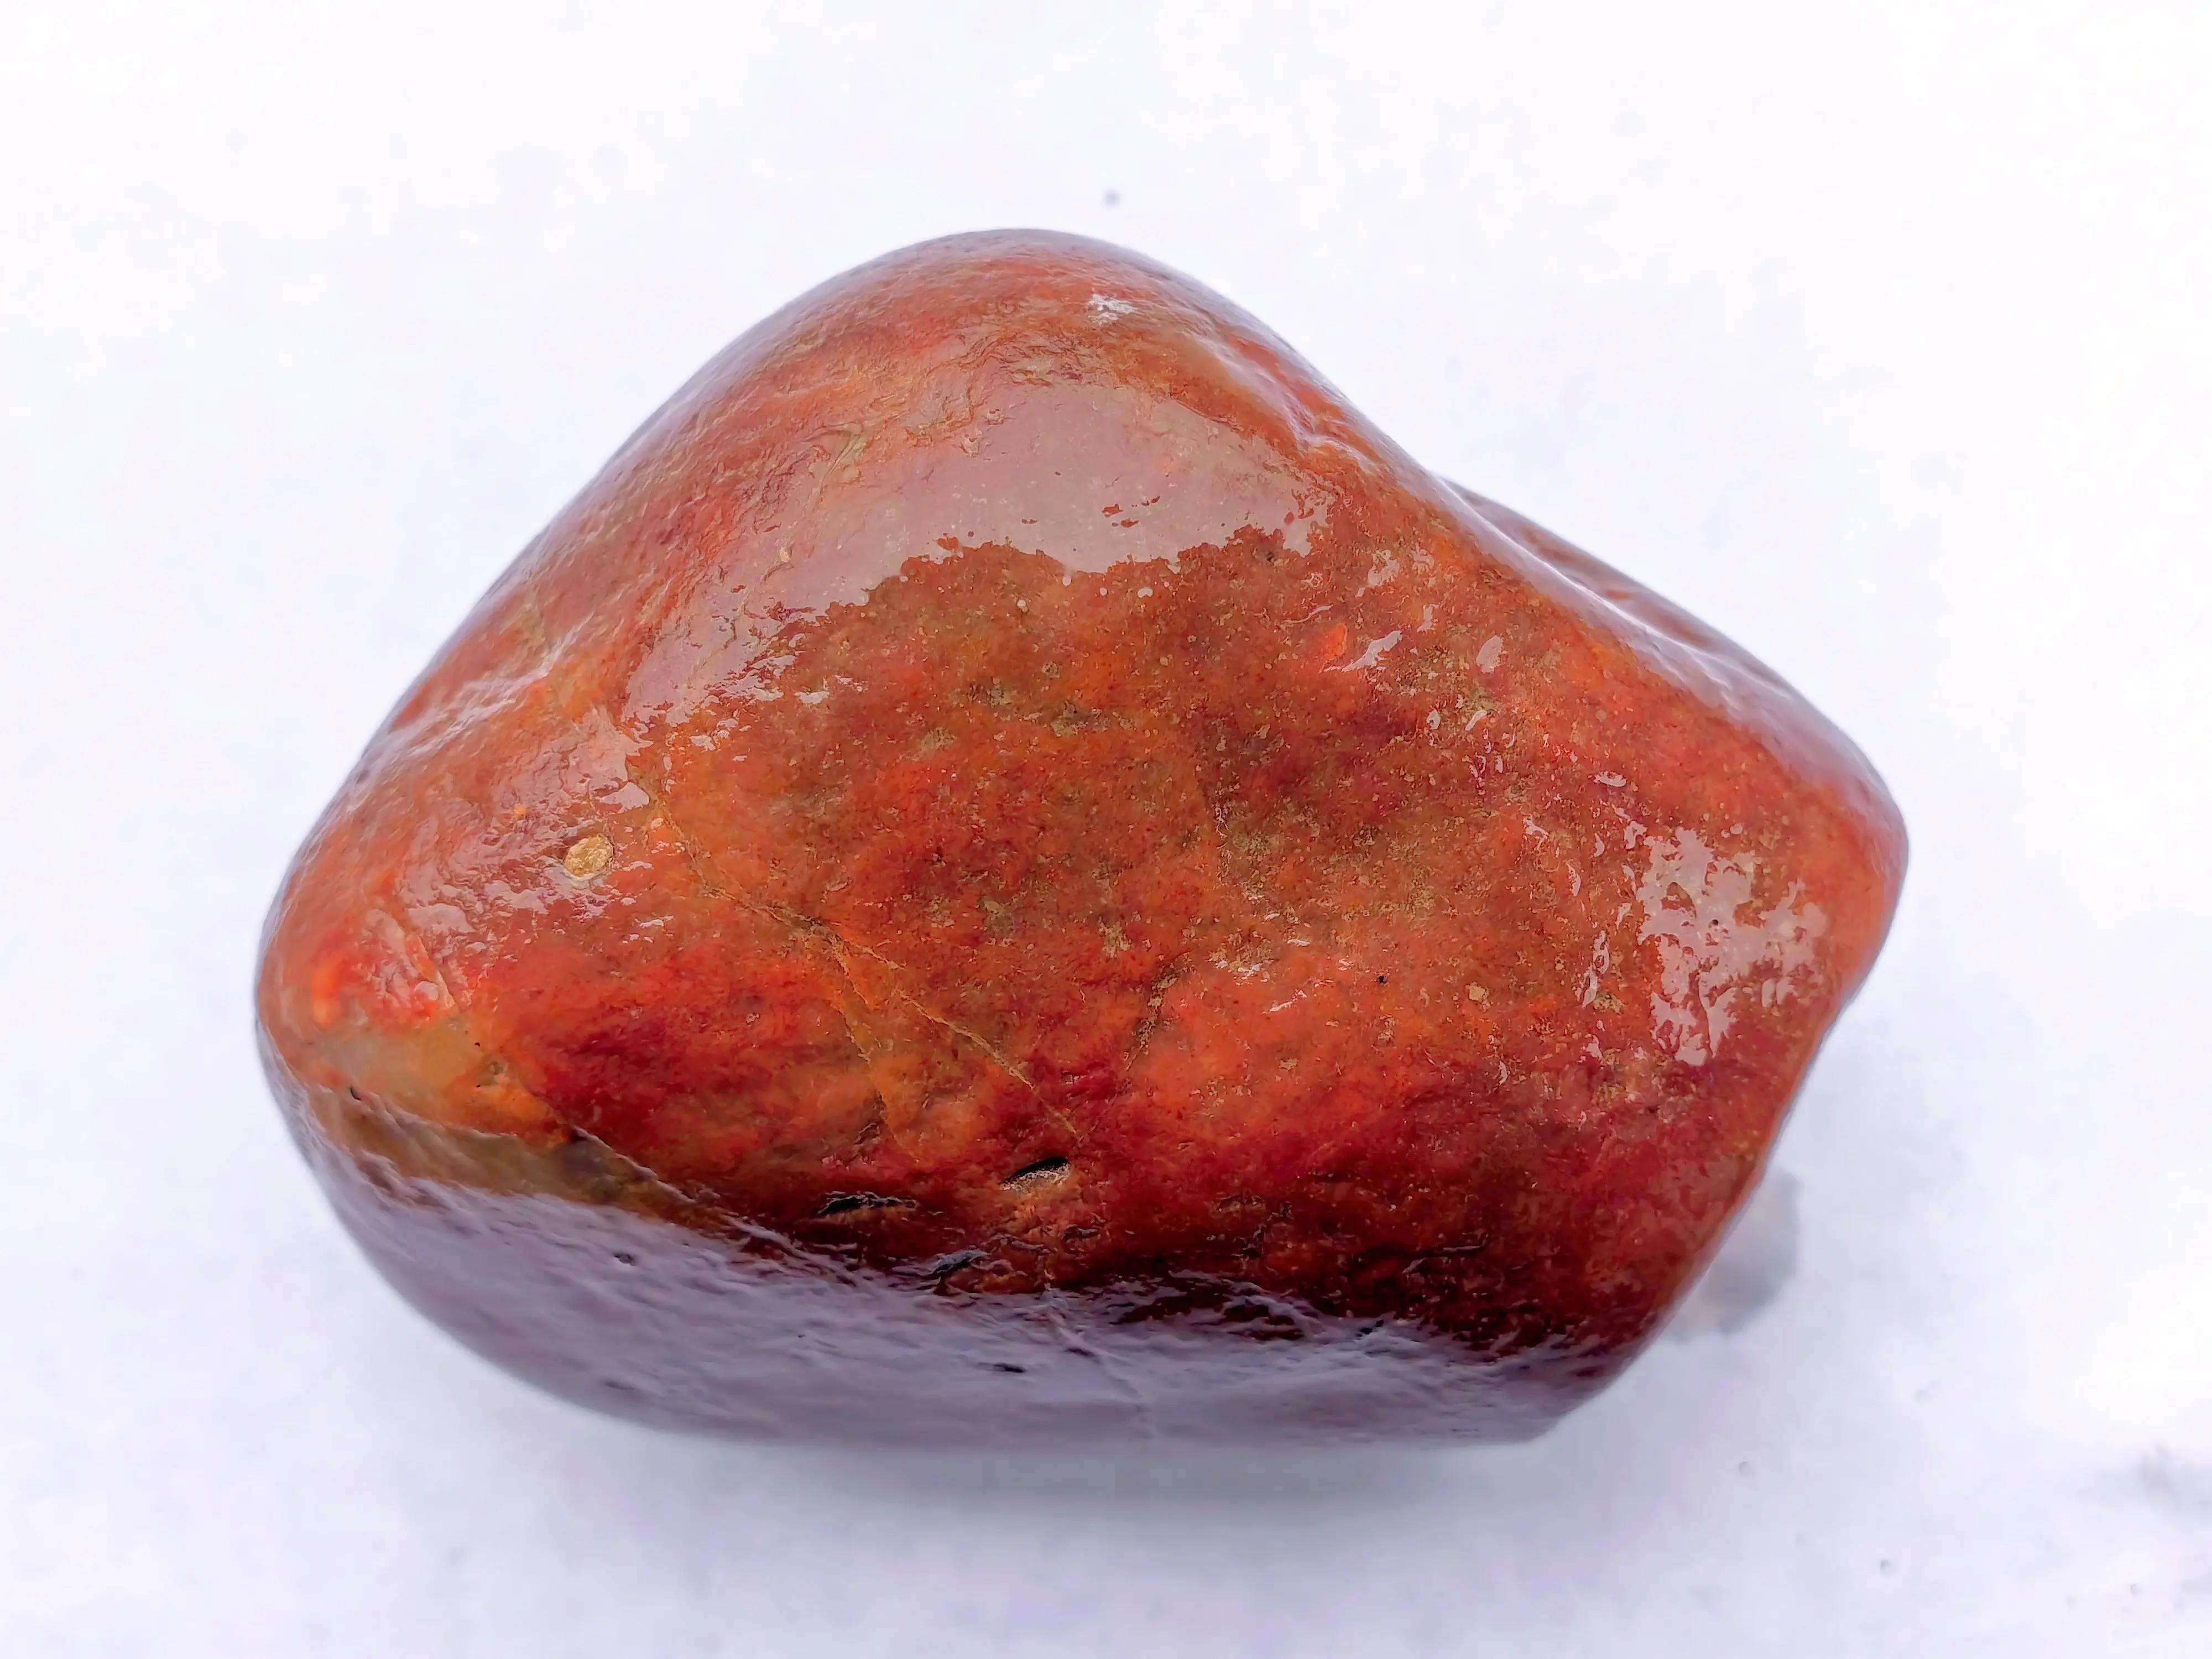 湖北宜昌:老汉捡到赤红重彩玛瑙石,形如铁饼,浸水如太阳